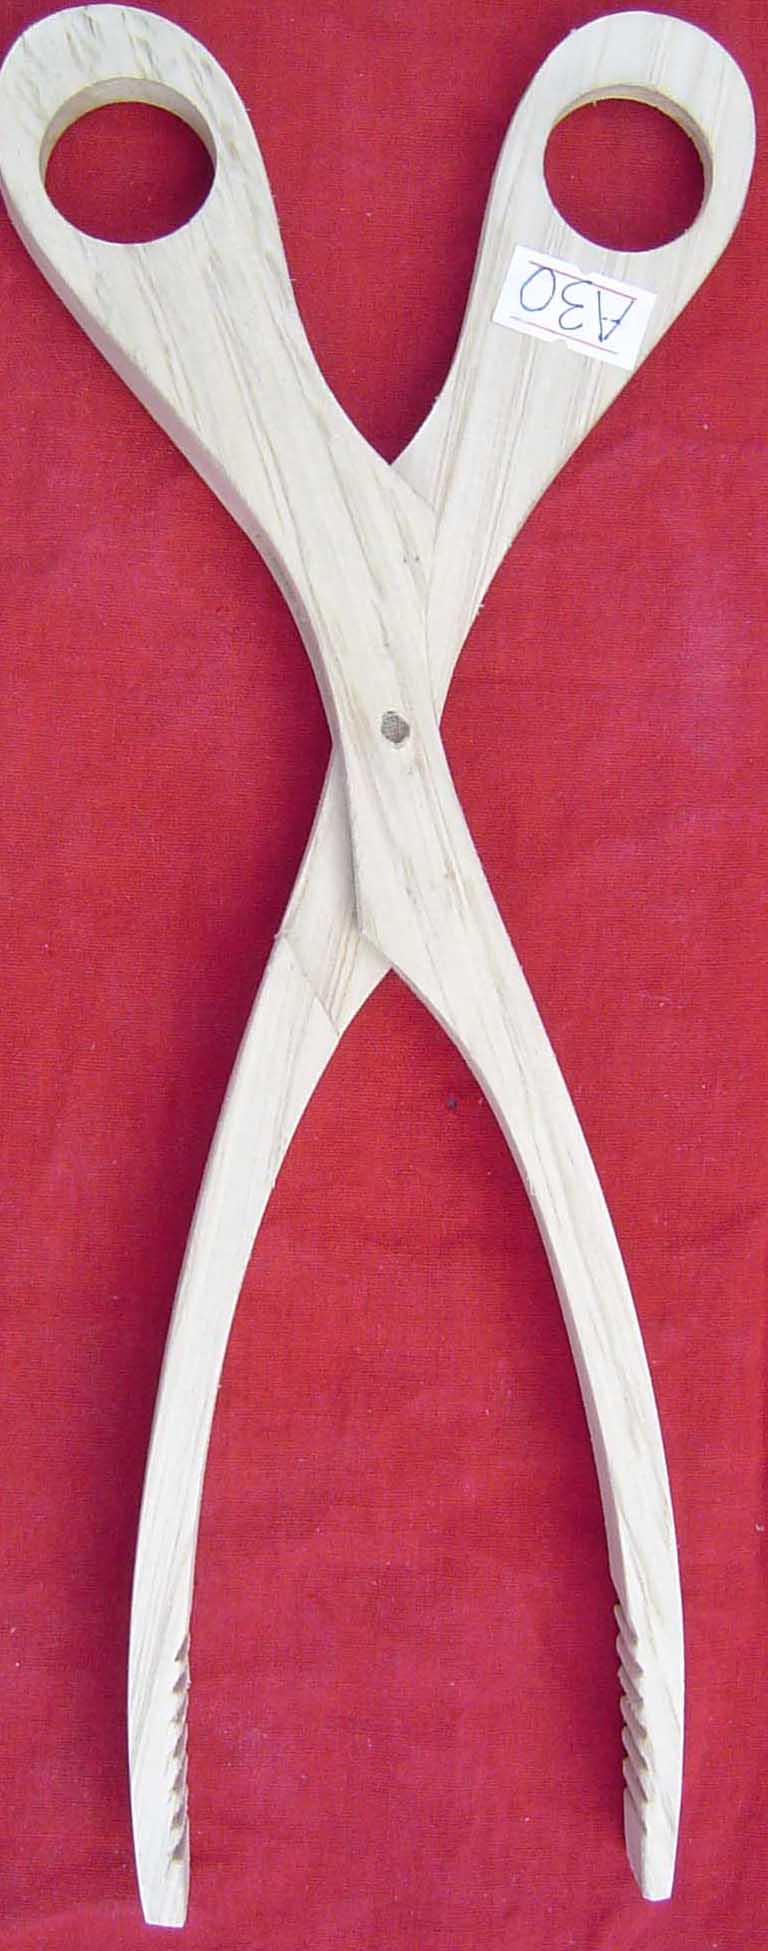 Wooden tool (Scissors)